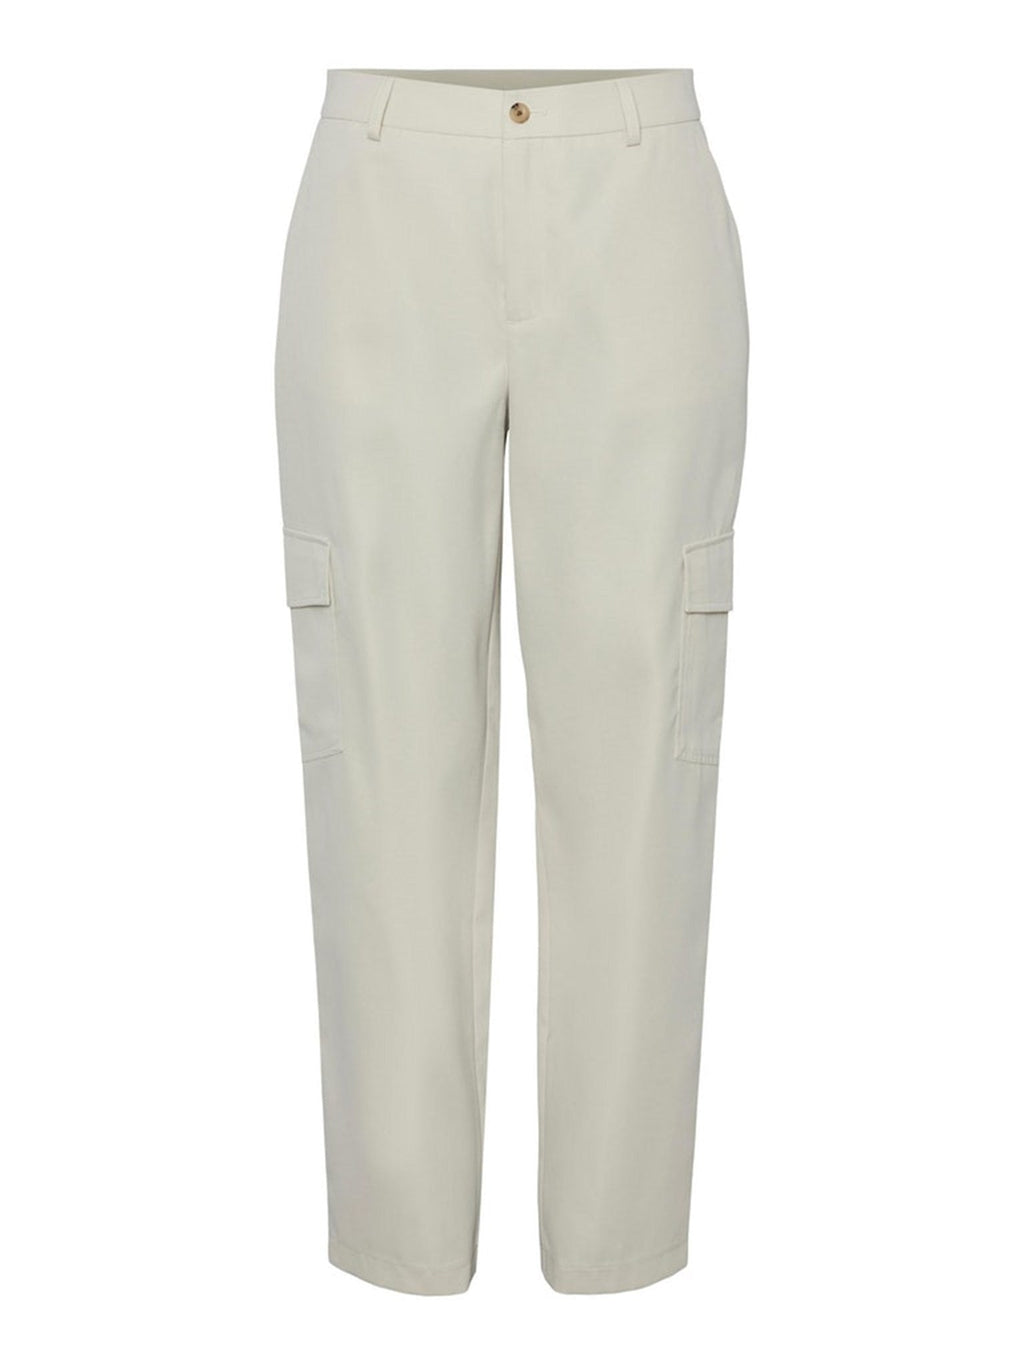 Pantalones de carga de Sille - pimienta blanca